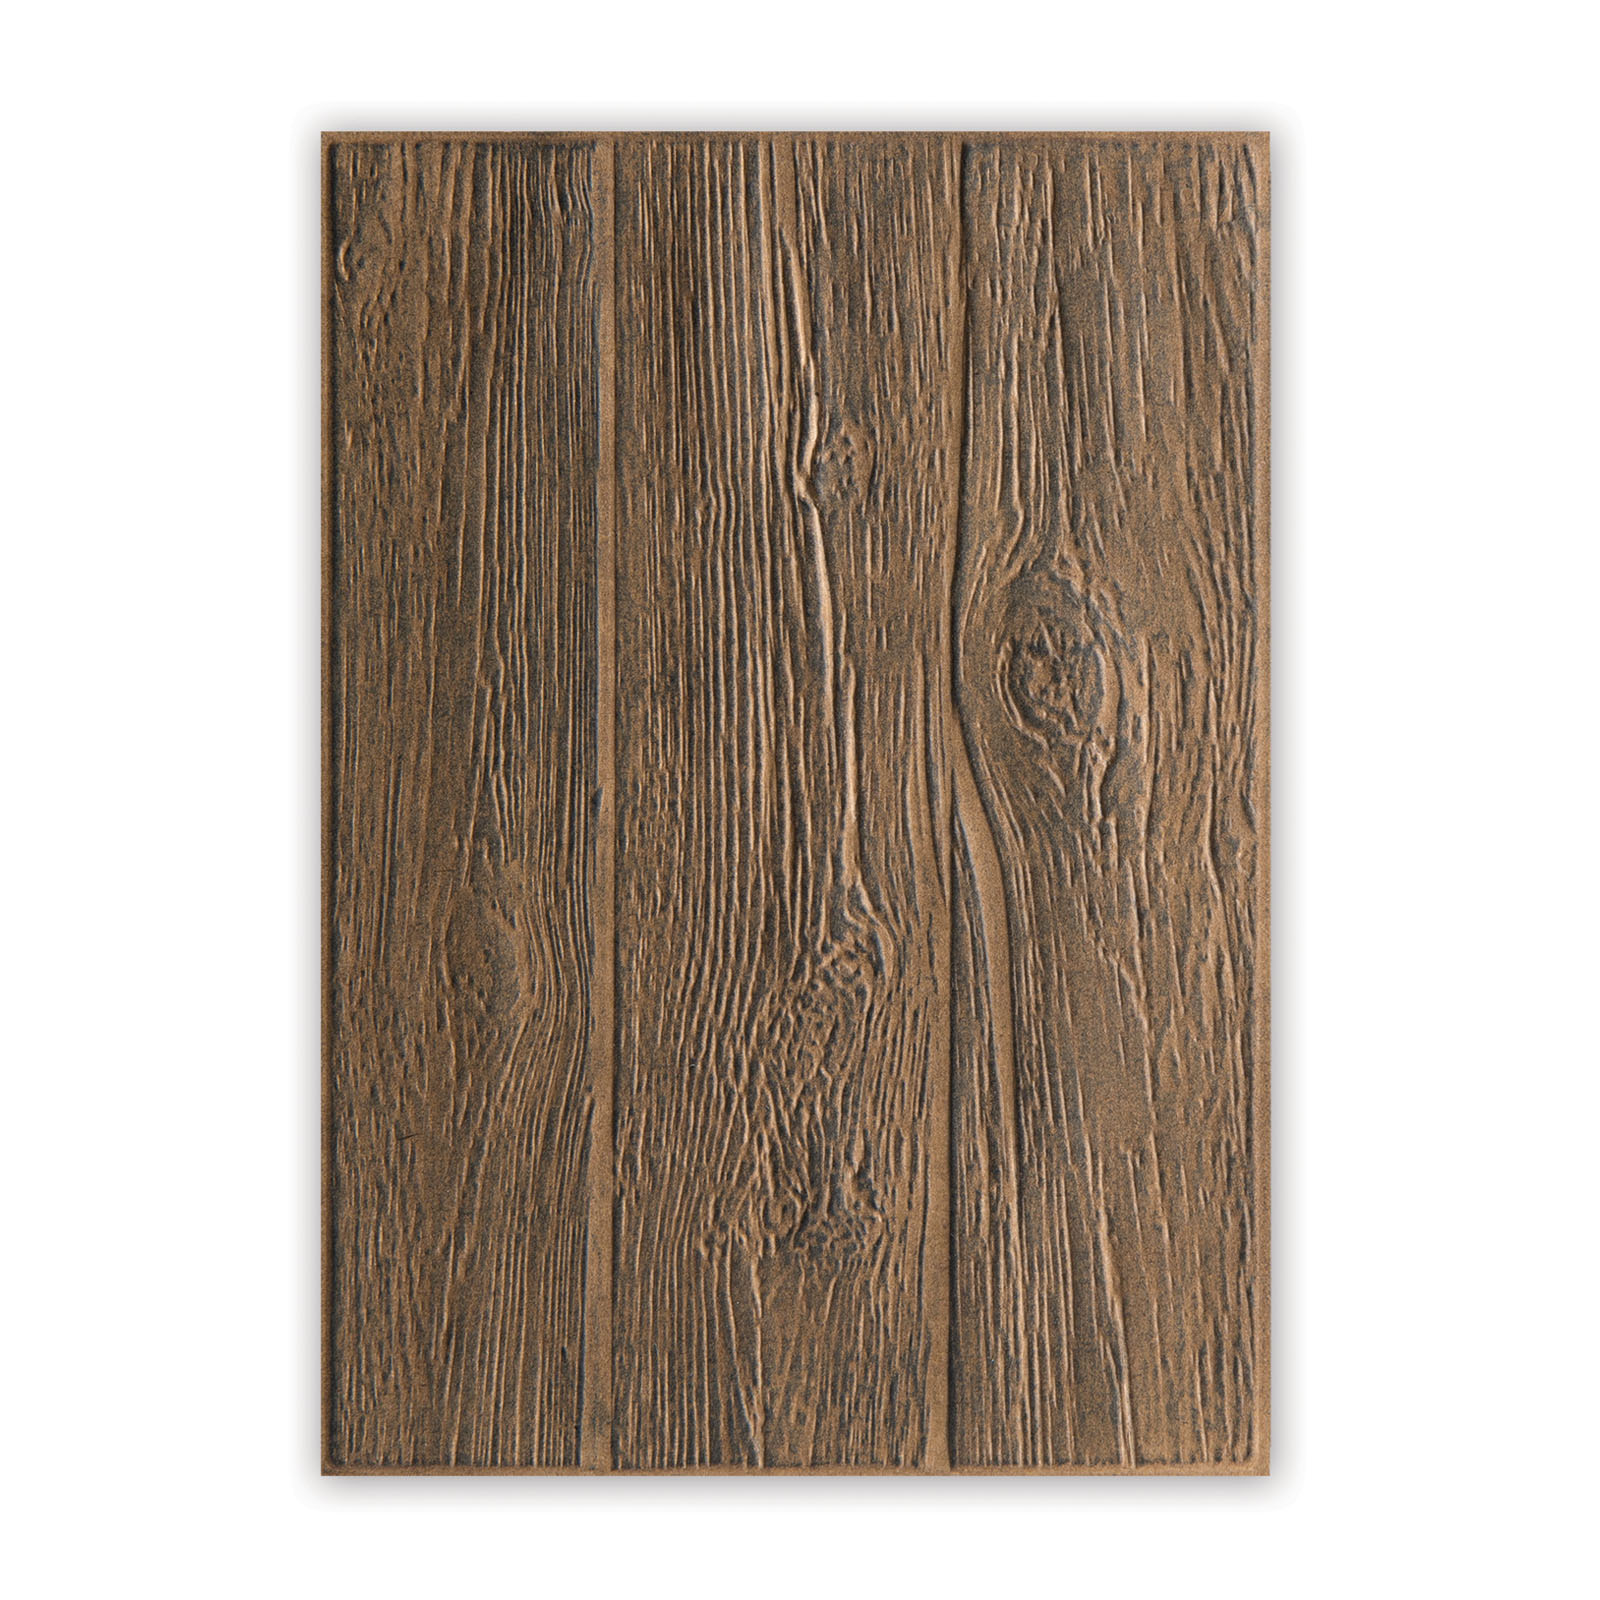 Sizzix • La texture 3-D s'estompe en bois de dossier de gaufrage par Tim Holtz